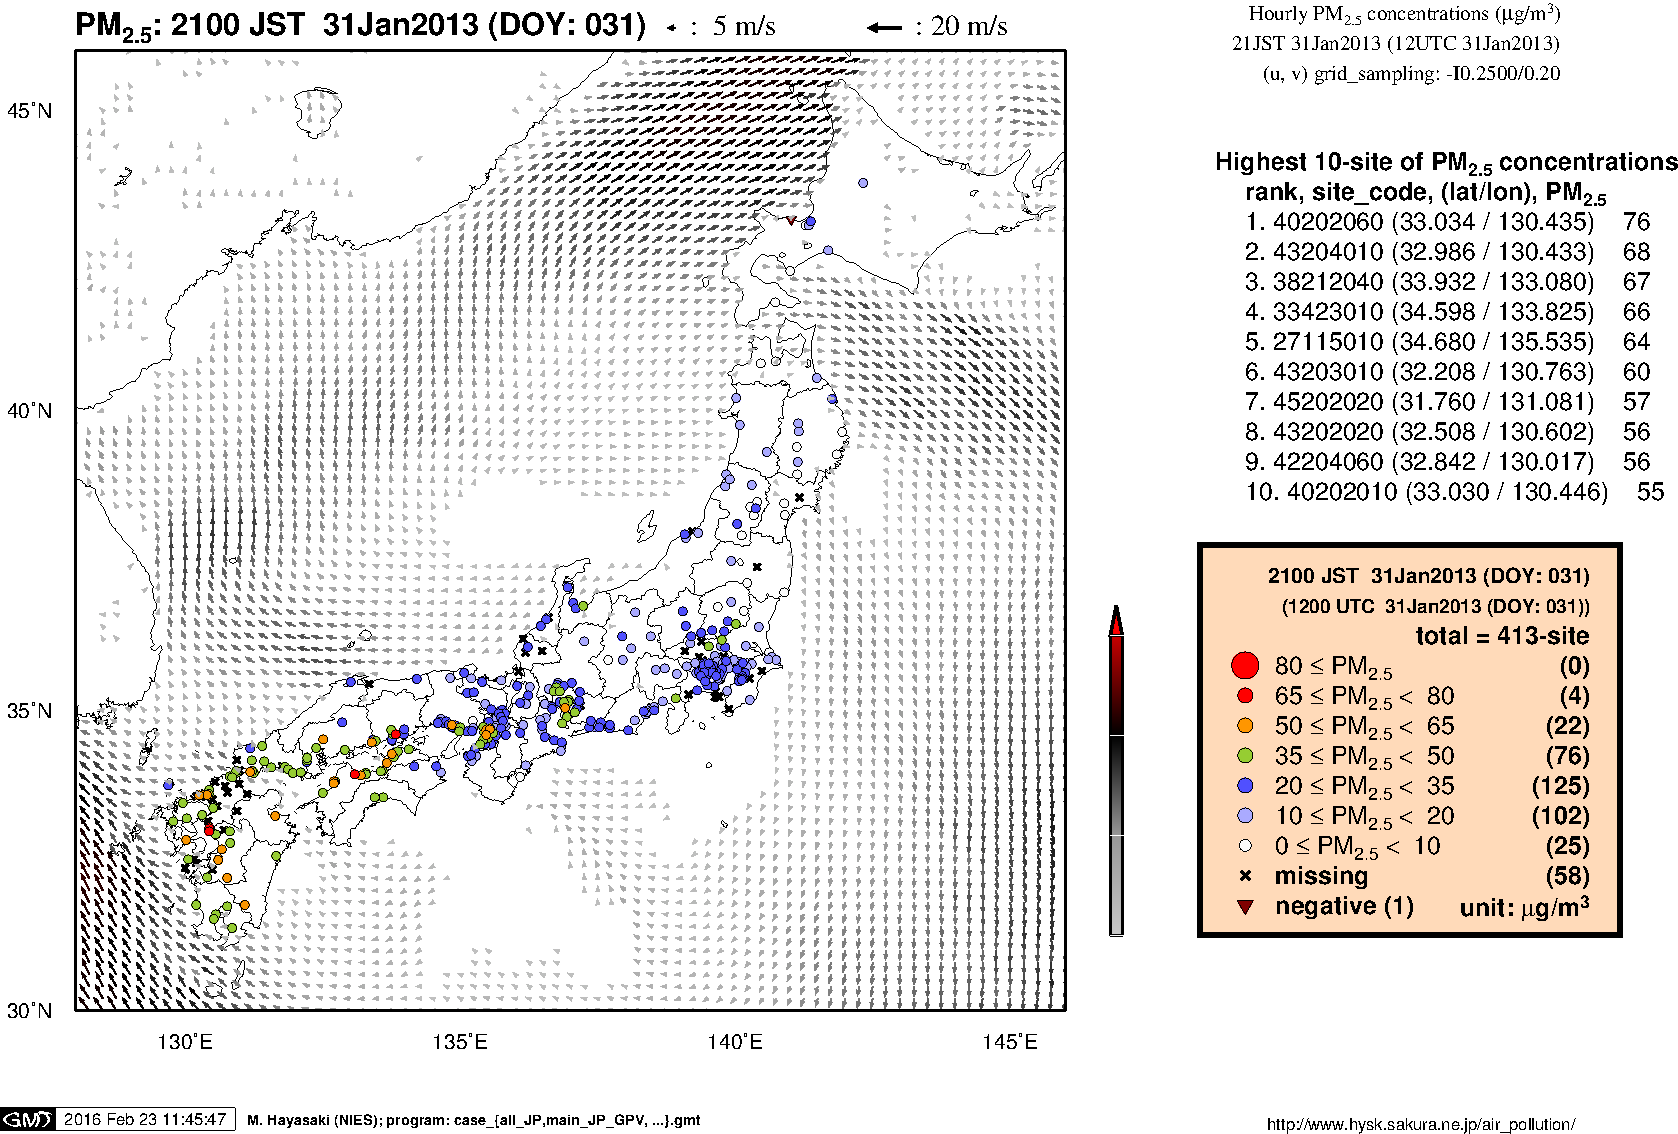 PM2.5 concentration in Japan (21JST 31Jan2013)